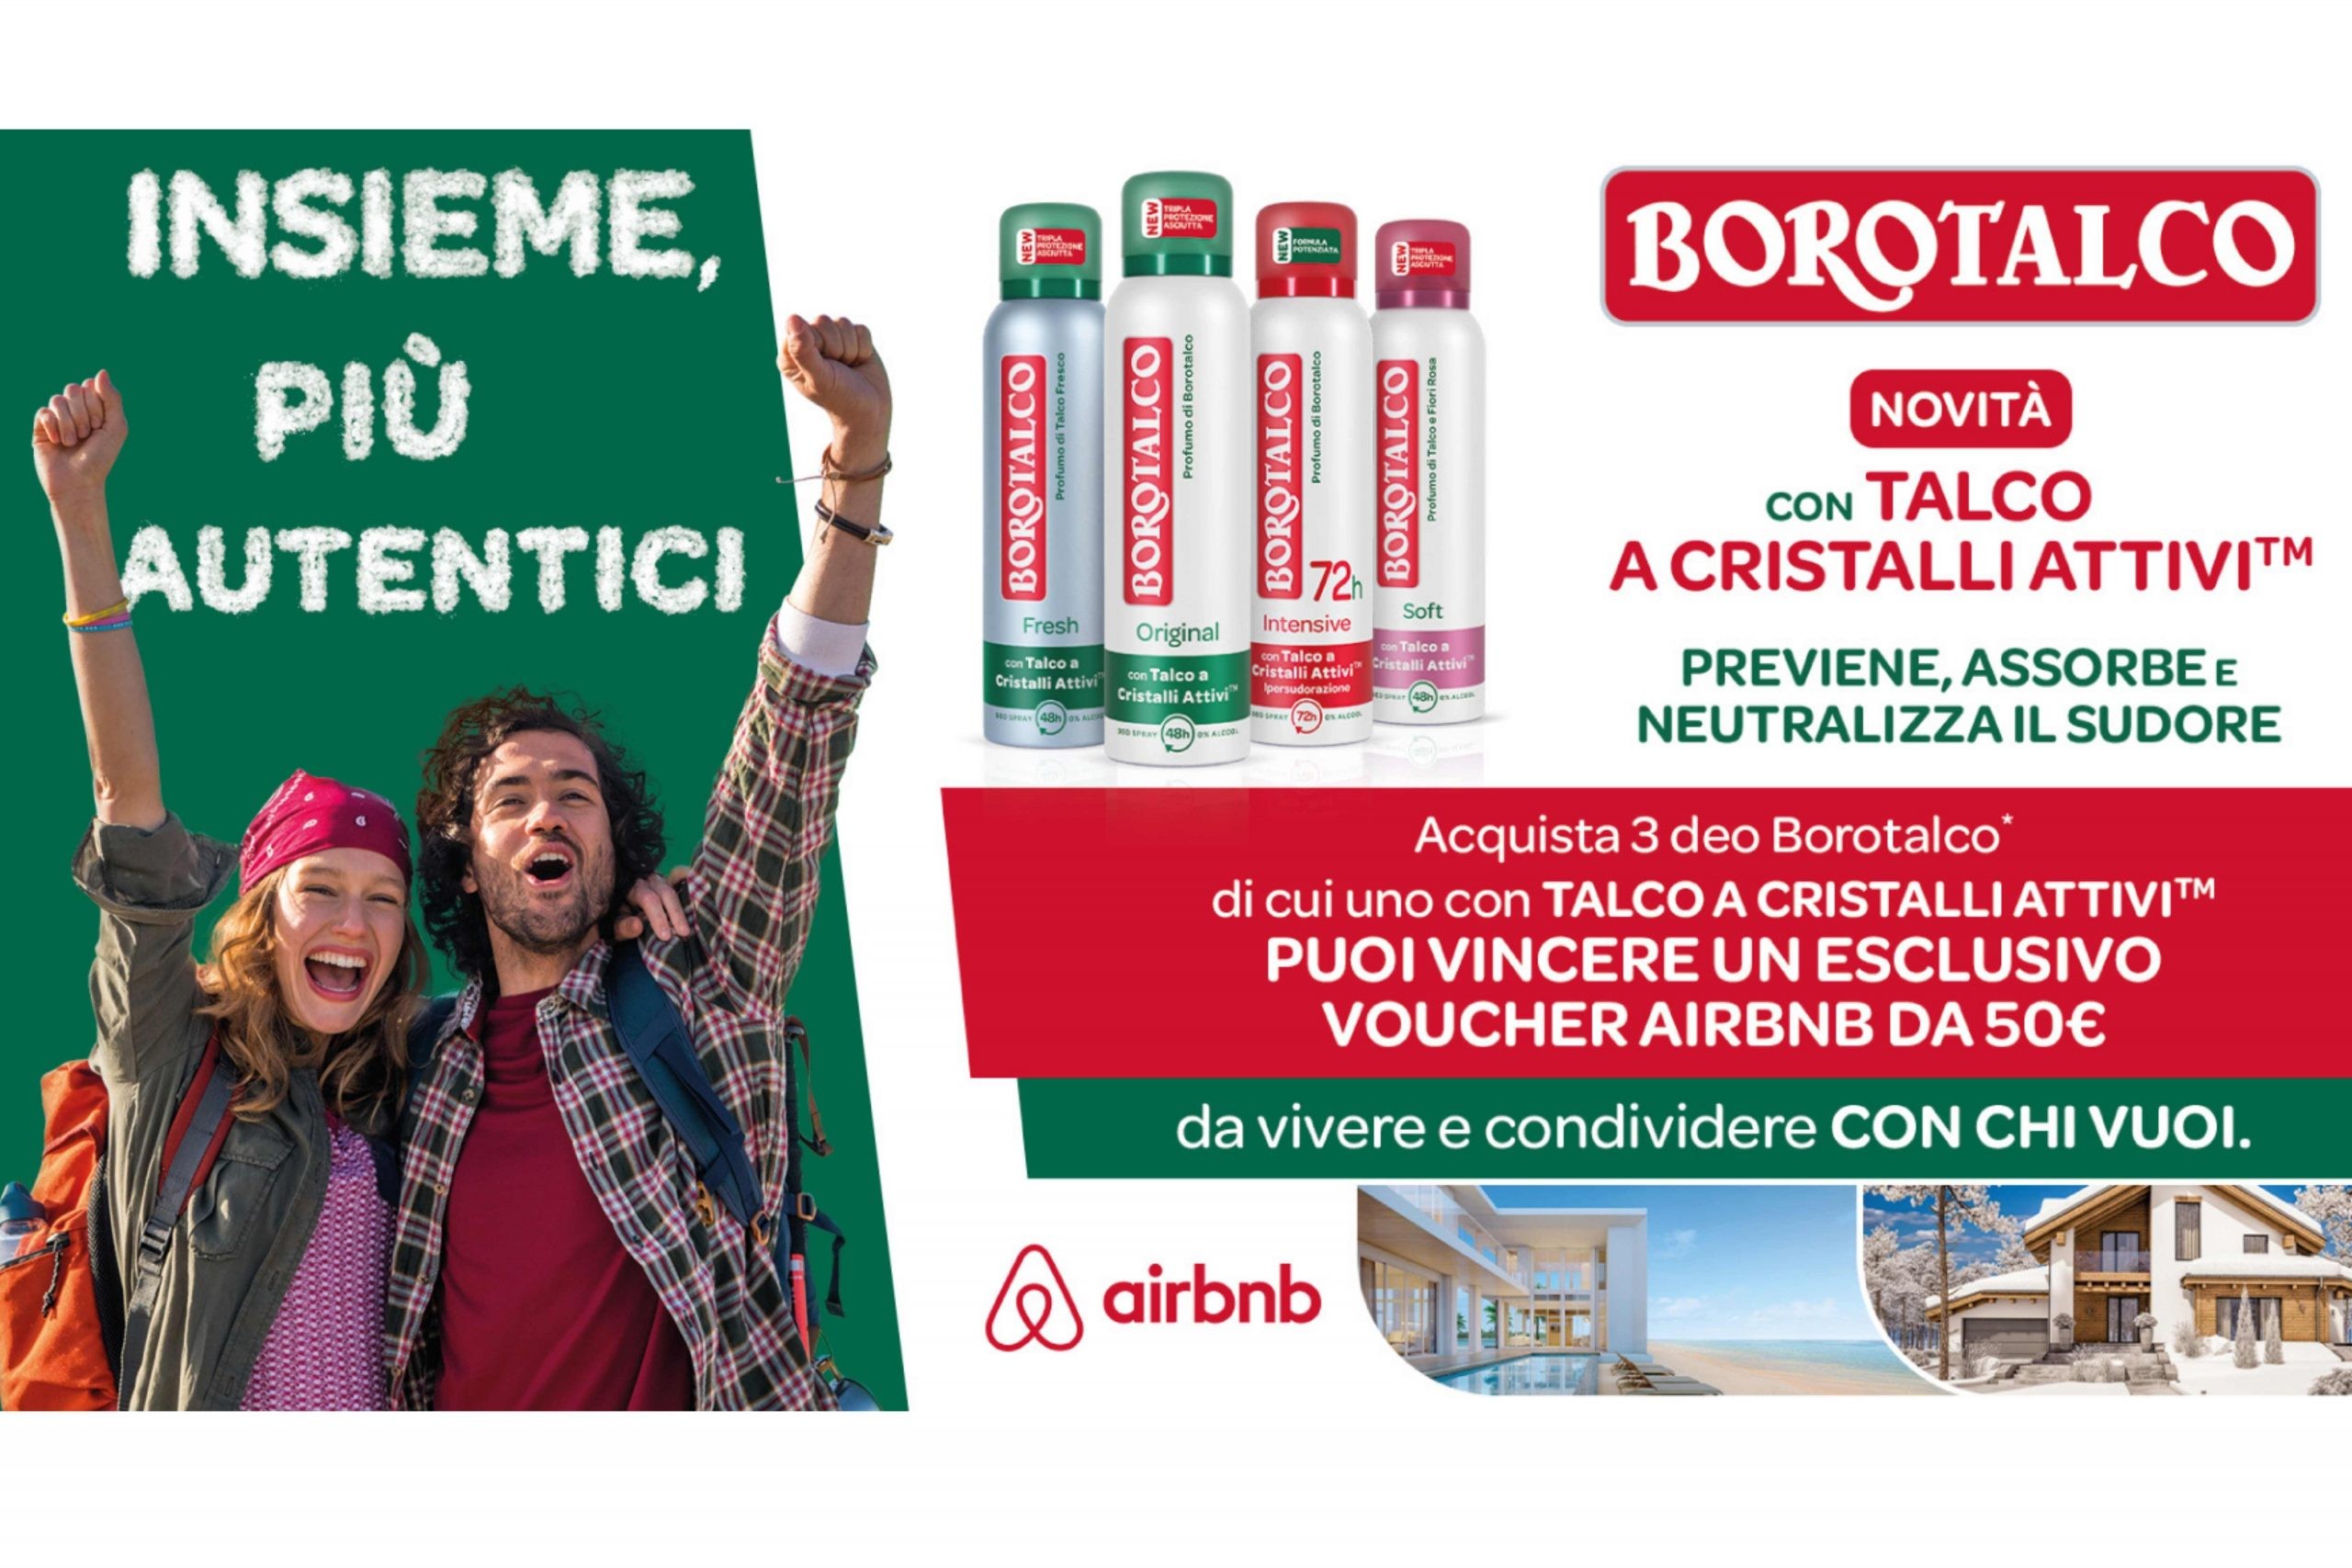 Concorso “Insieme più autentici” by Borotalco: come vincere un voucher AirBnB da 50€